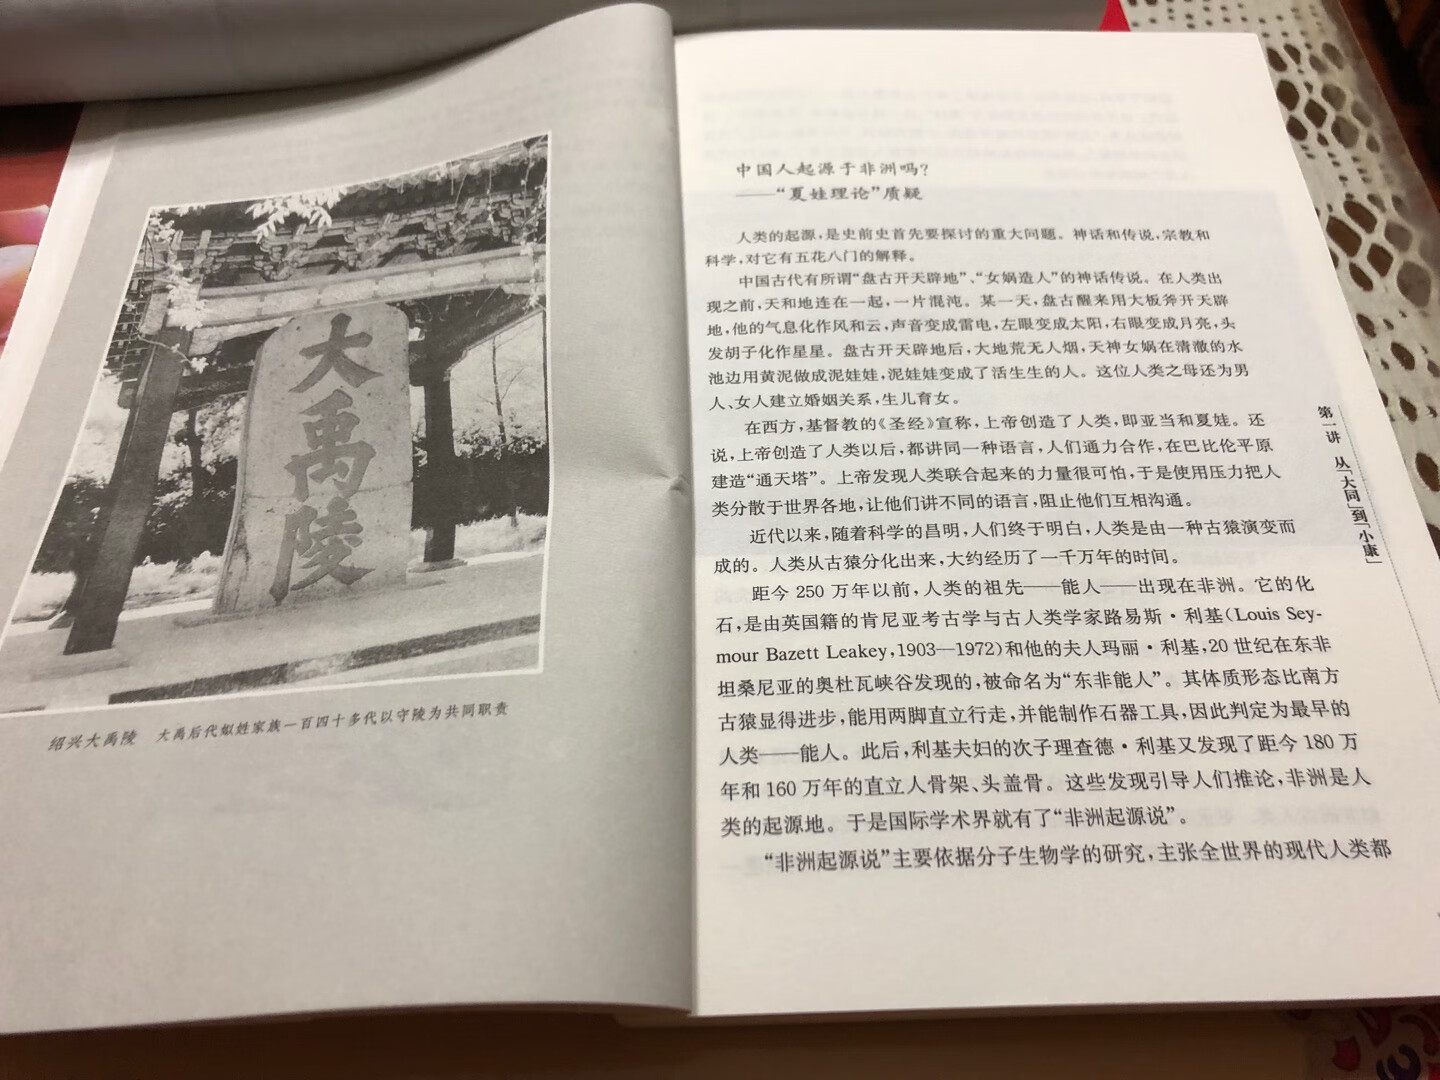 樊树志先生是个大学者，读他的书应该恭恭敬敬、认认真真、仔仔细细，相信一定会在他的书里找到自己最喜欢、最有益的内容。